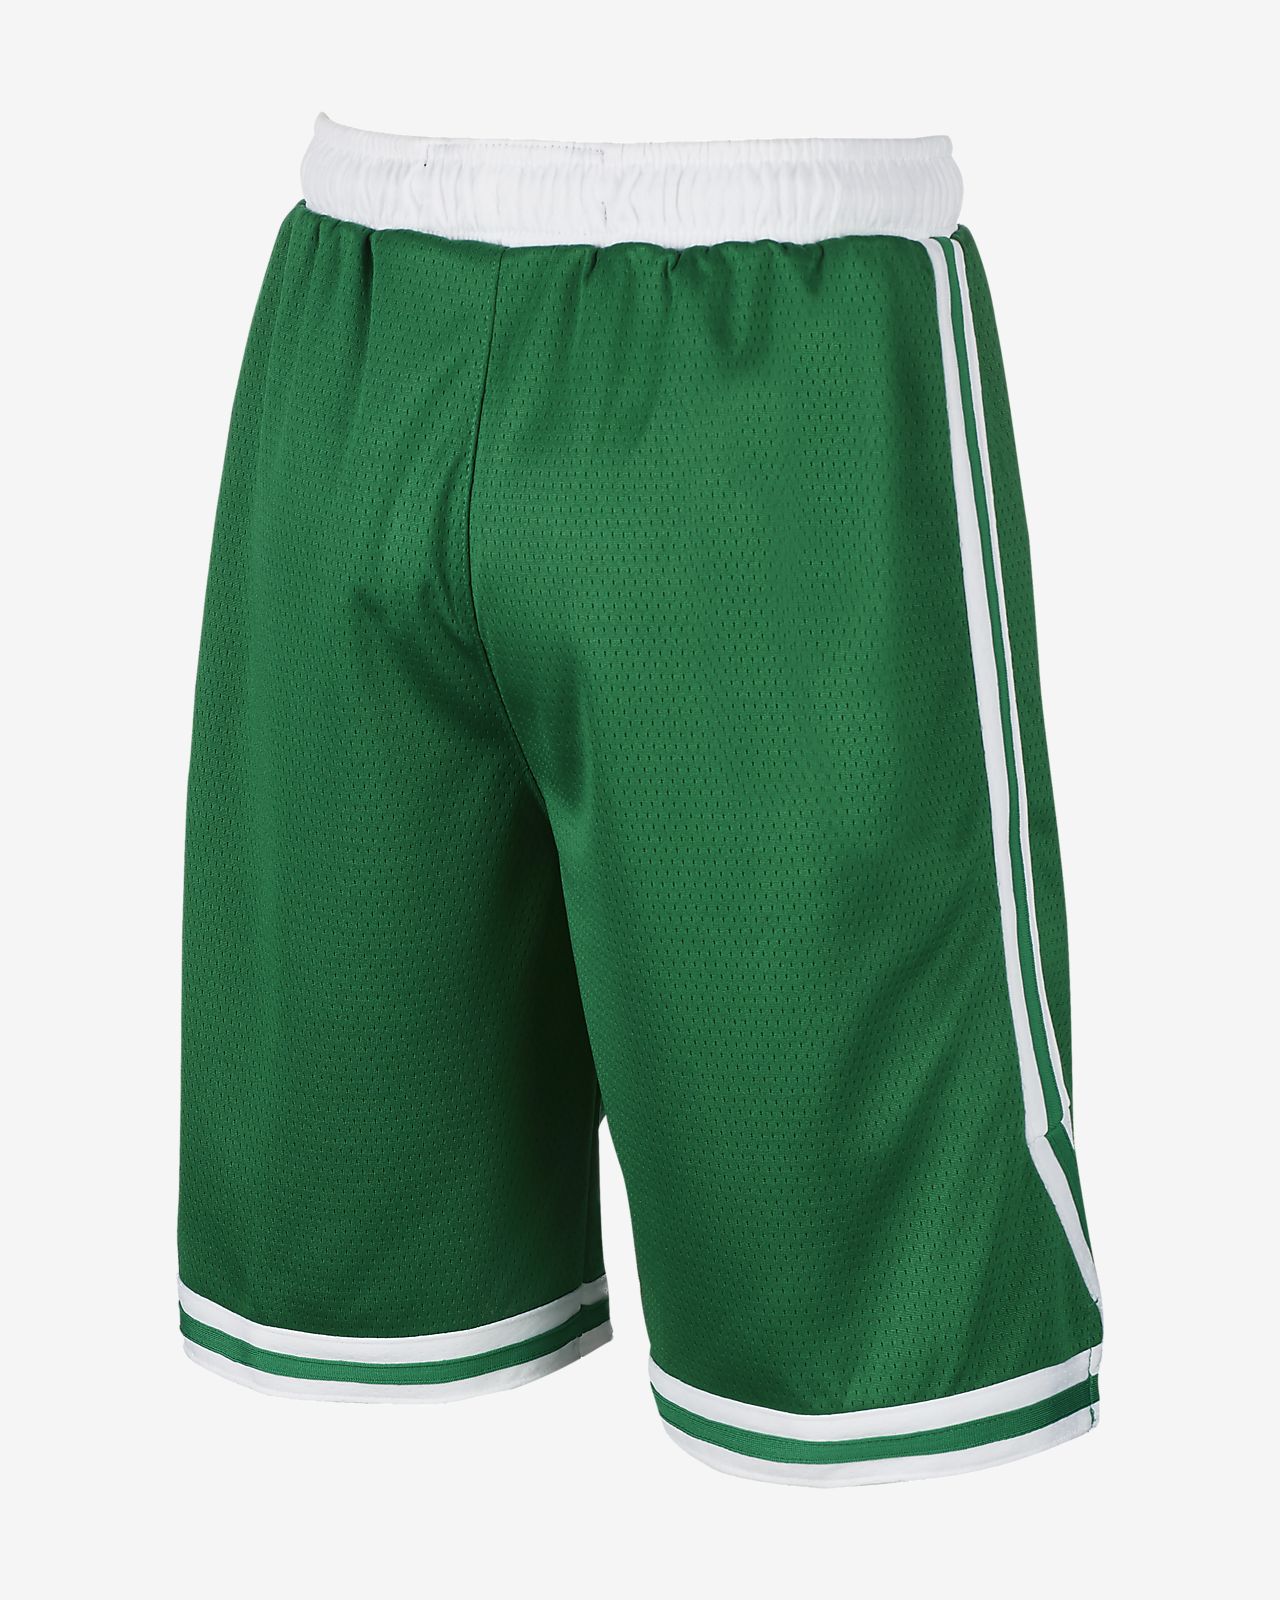 celtics short shorts